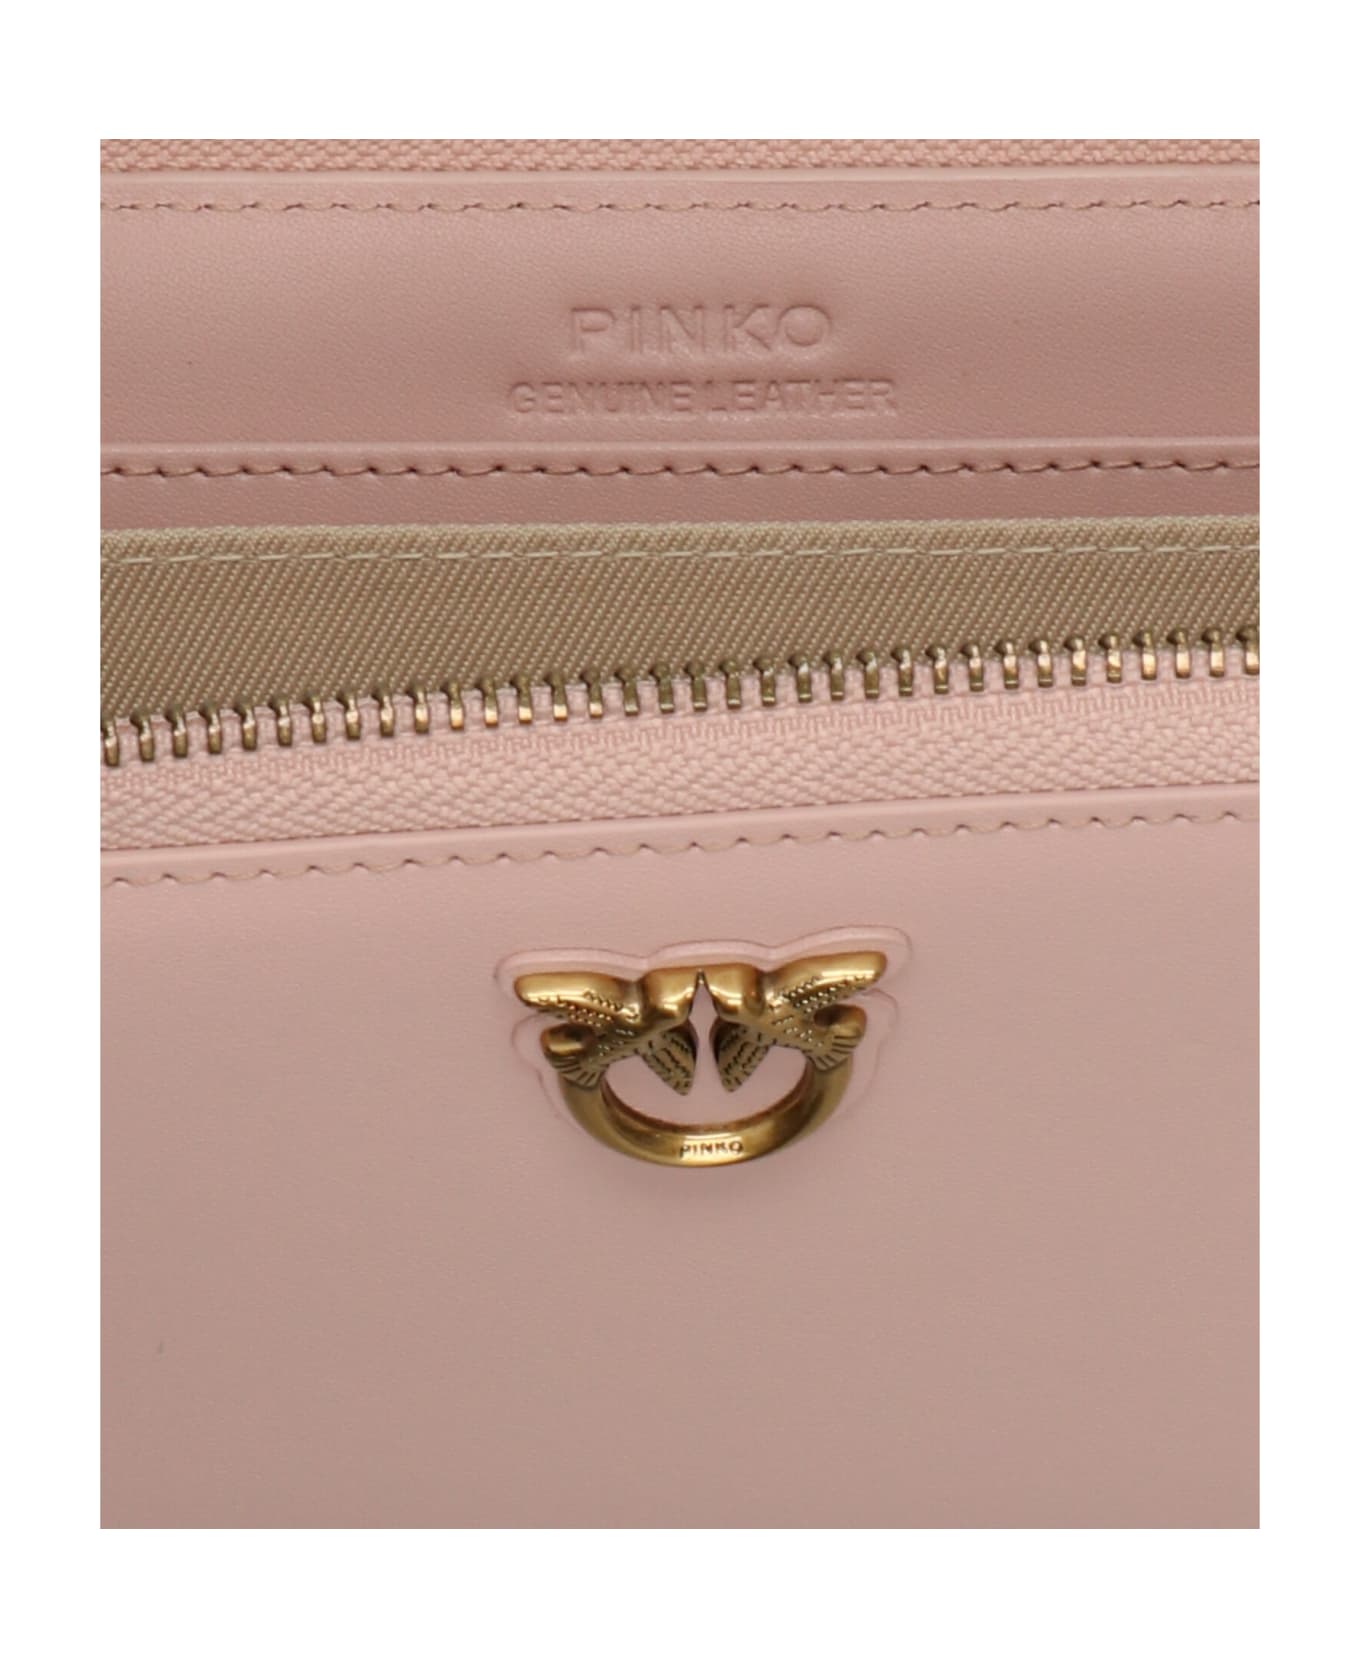 Pinko Zip Around Wallet - Pale pink